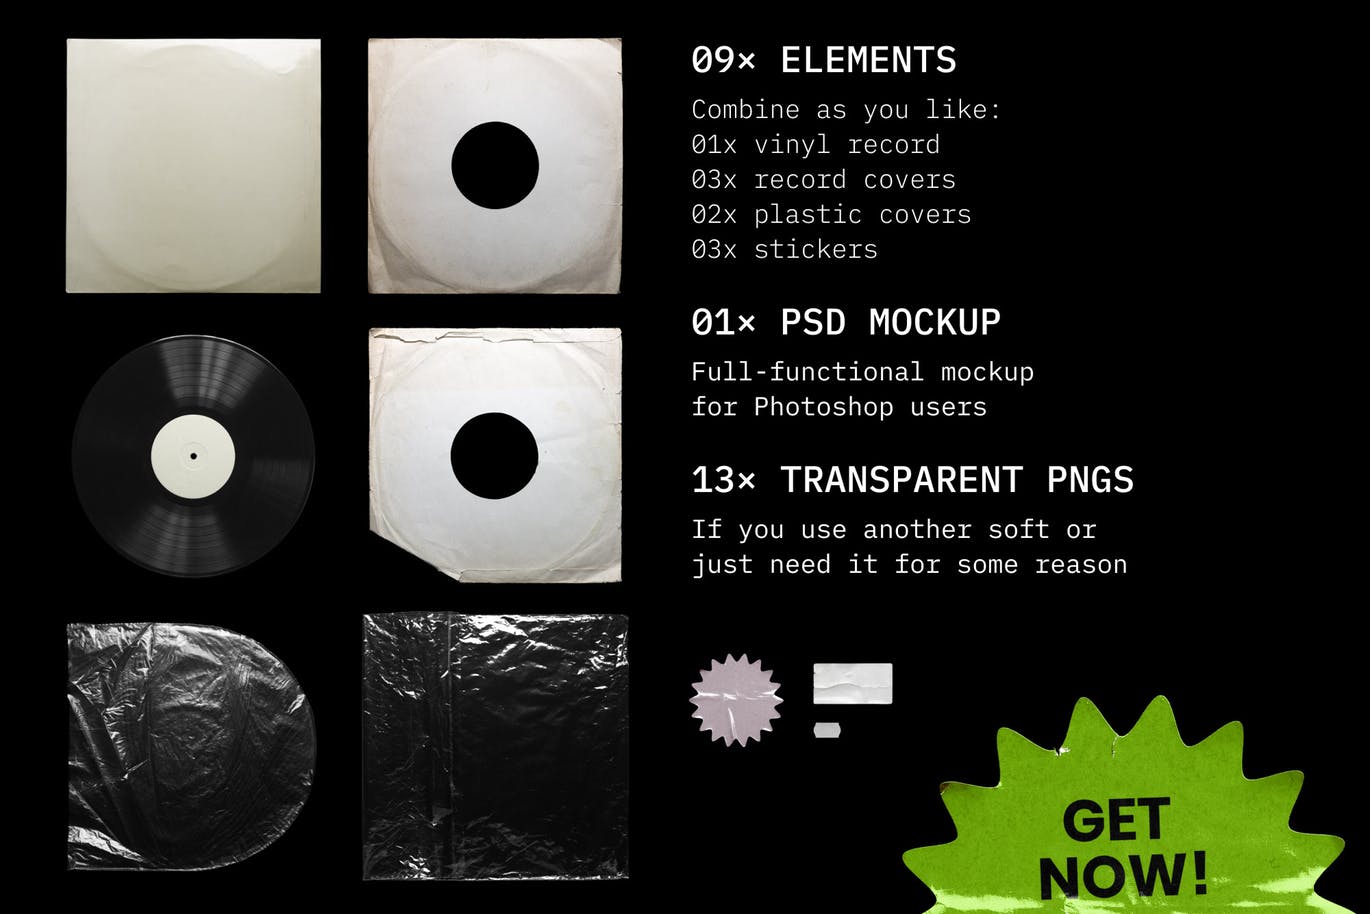 乙烯基唱片包装盒及封面设计图蚂蚁素材精选模板 Vinyl Record Mockup插图(9)